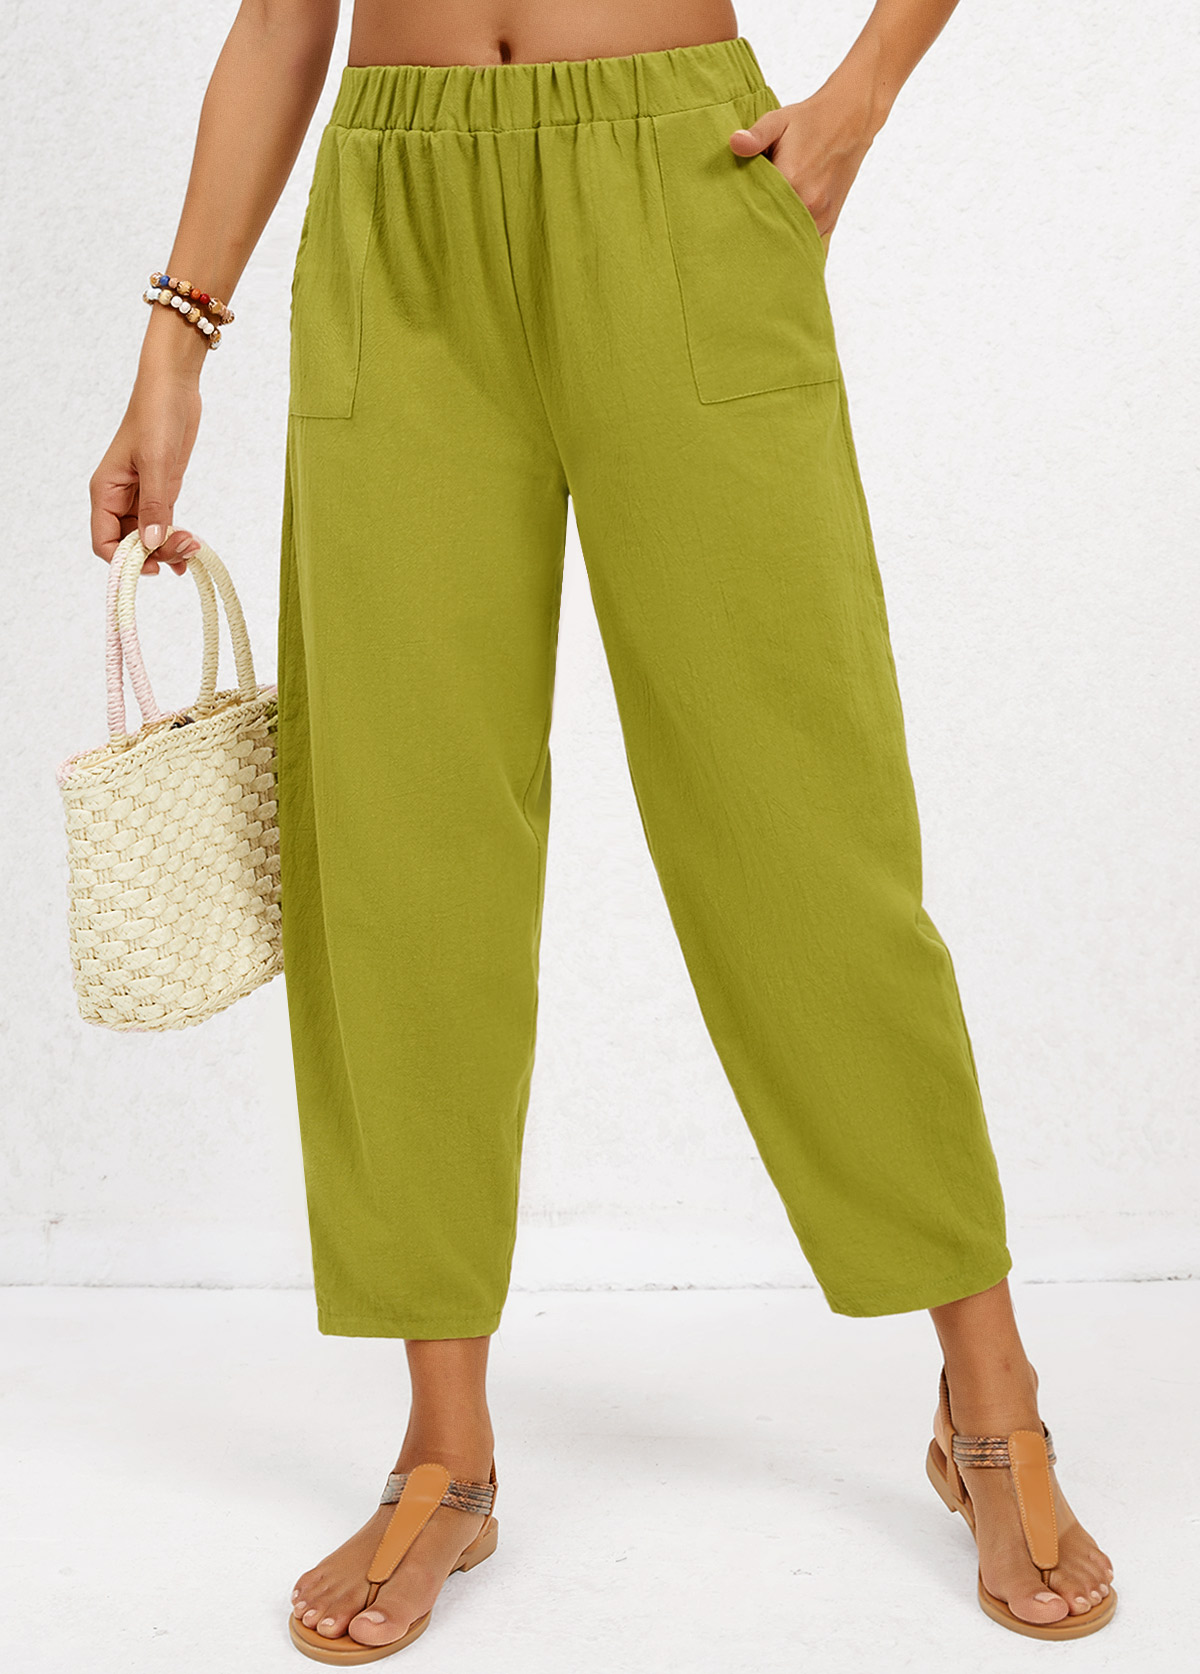 poche vert olive taille élastique régulière pantalon taille moyenne